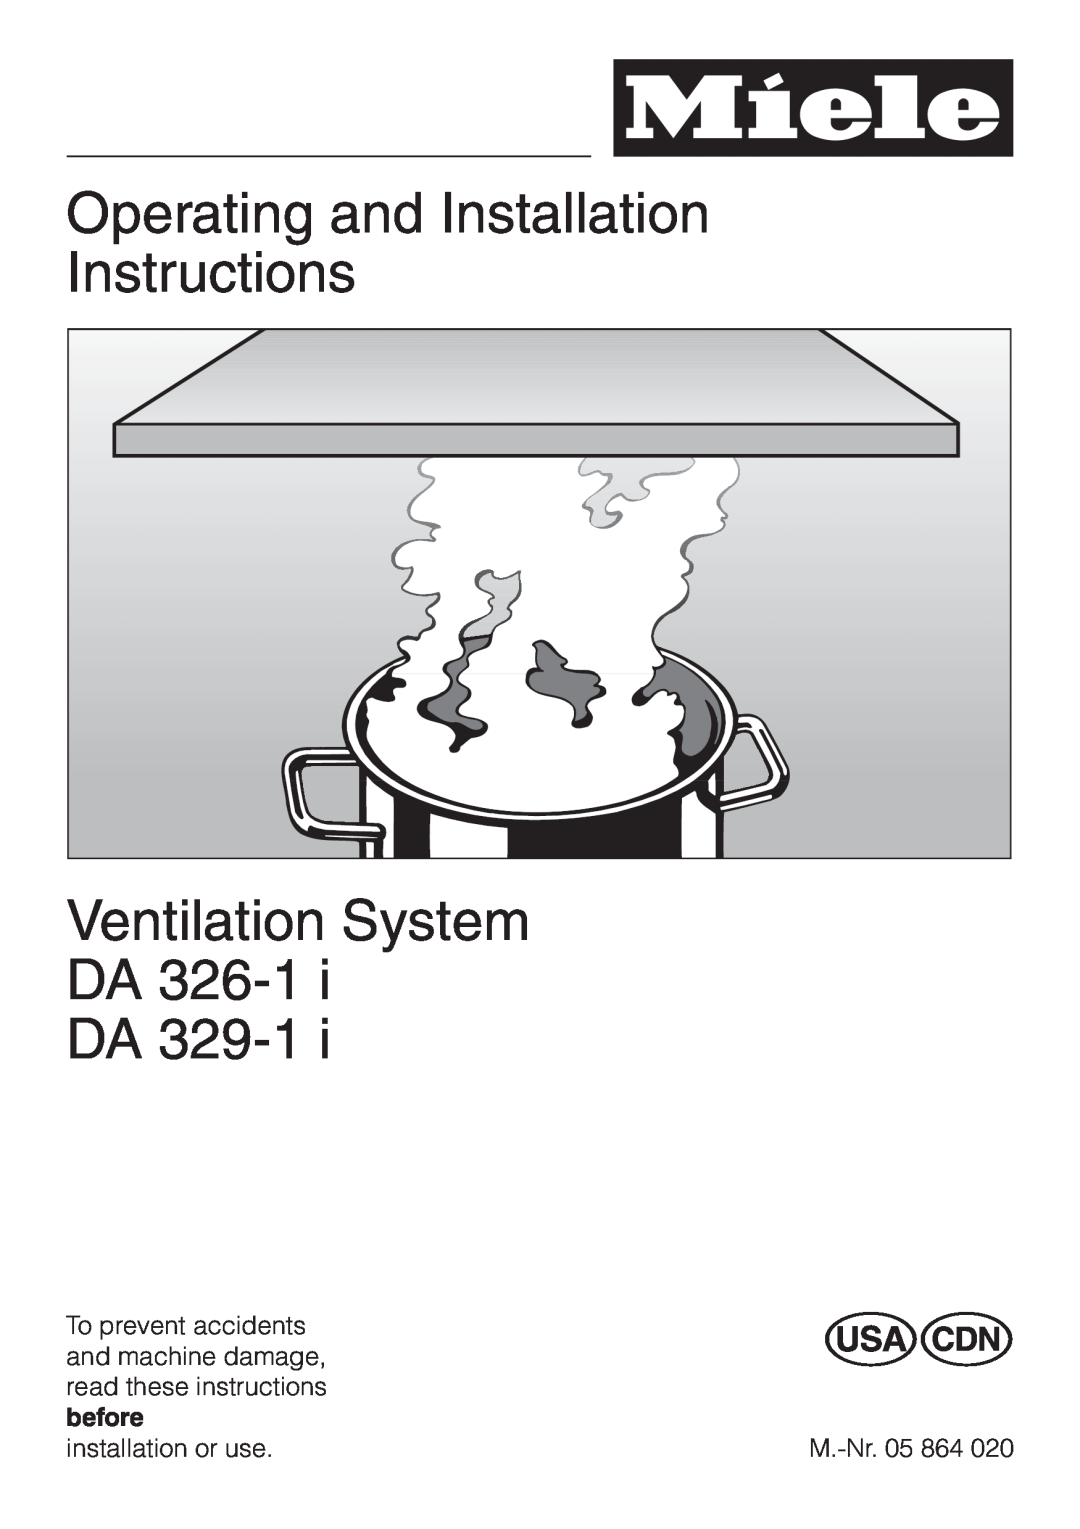 Miele DA329-1I, DA326-1I installation instructions Operating and Installation Instructions, Ventilation System DA DA 